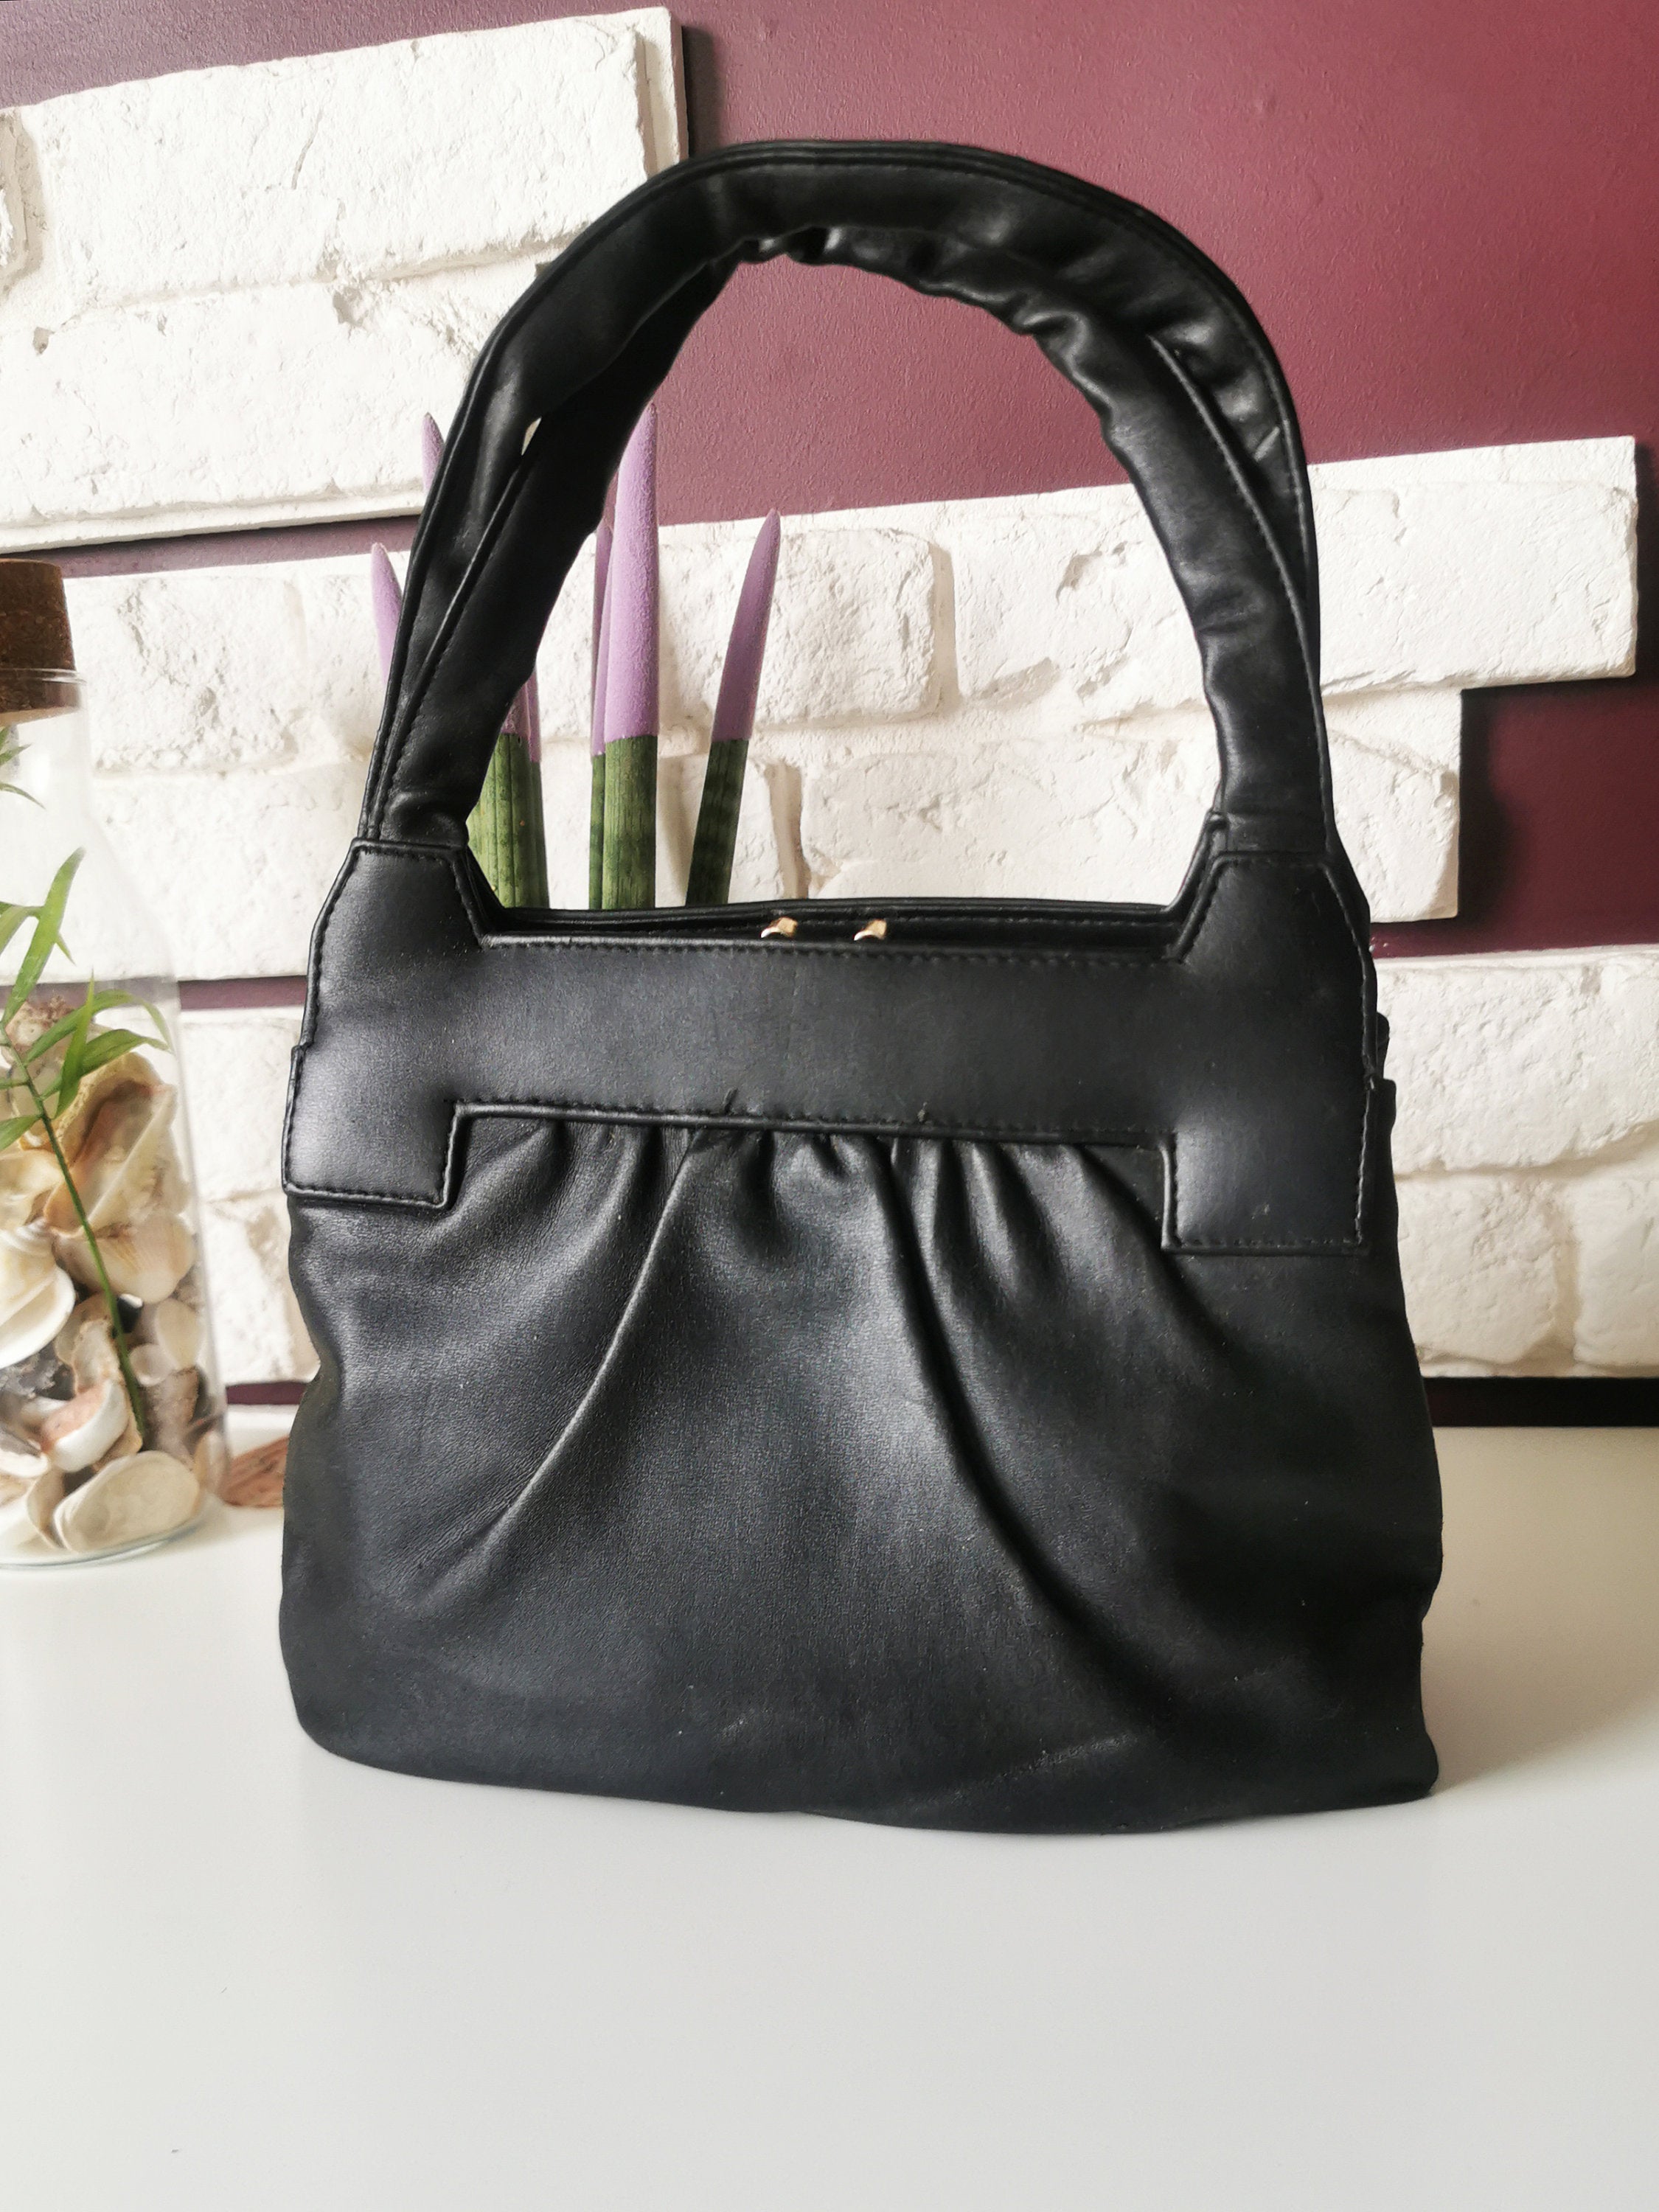 Vintage 60s black leather minimalist handbag